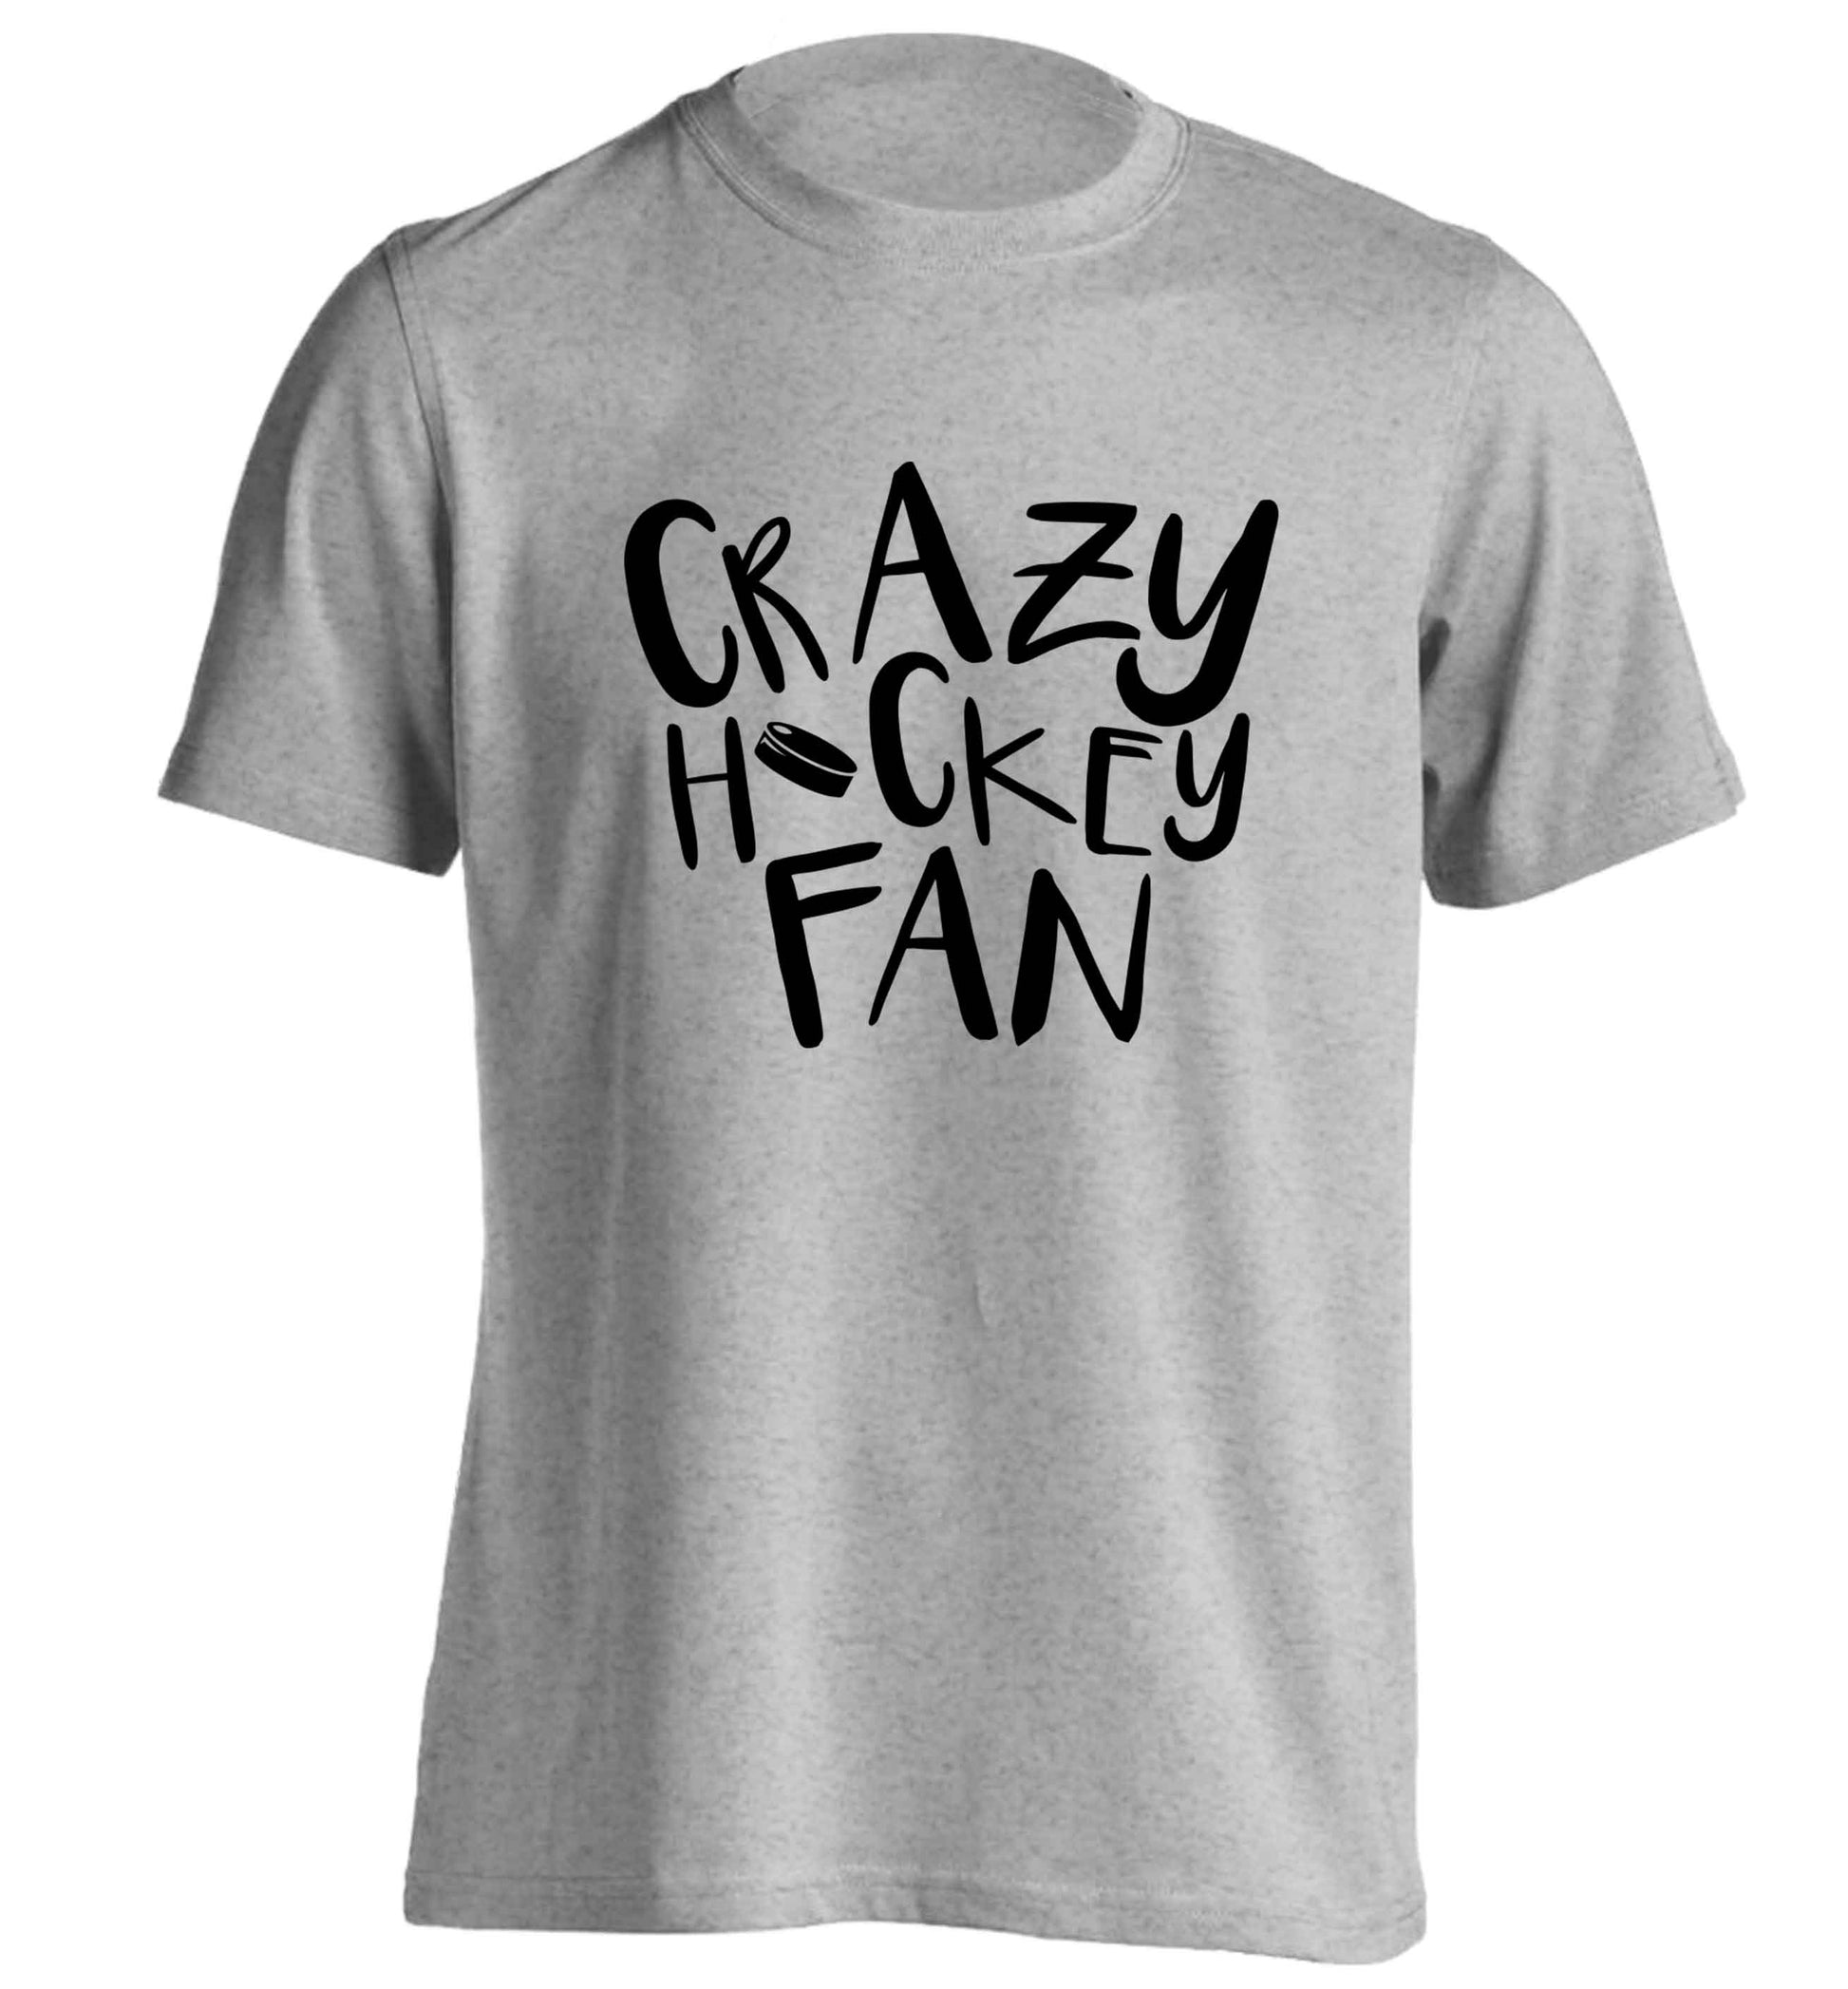 Crazy hockey fan adults unisex grey Tshirt 2XL